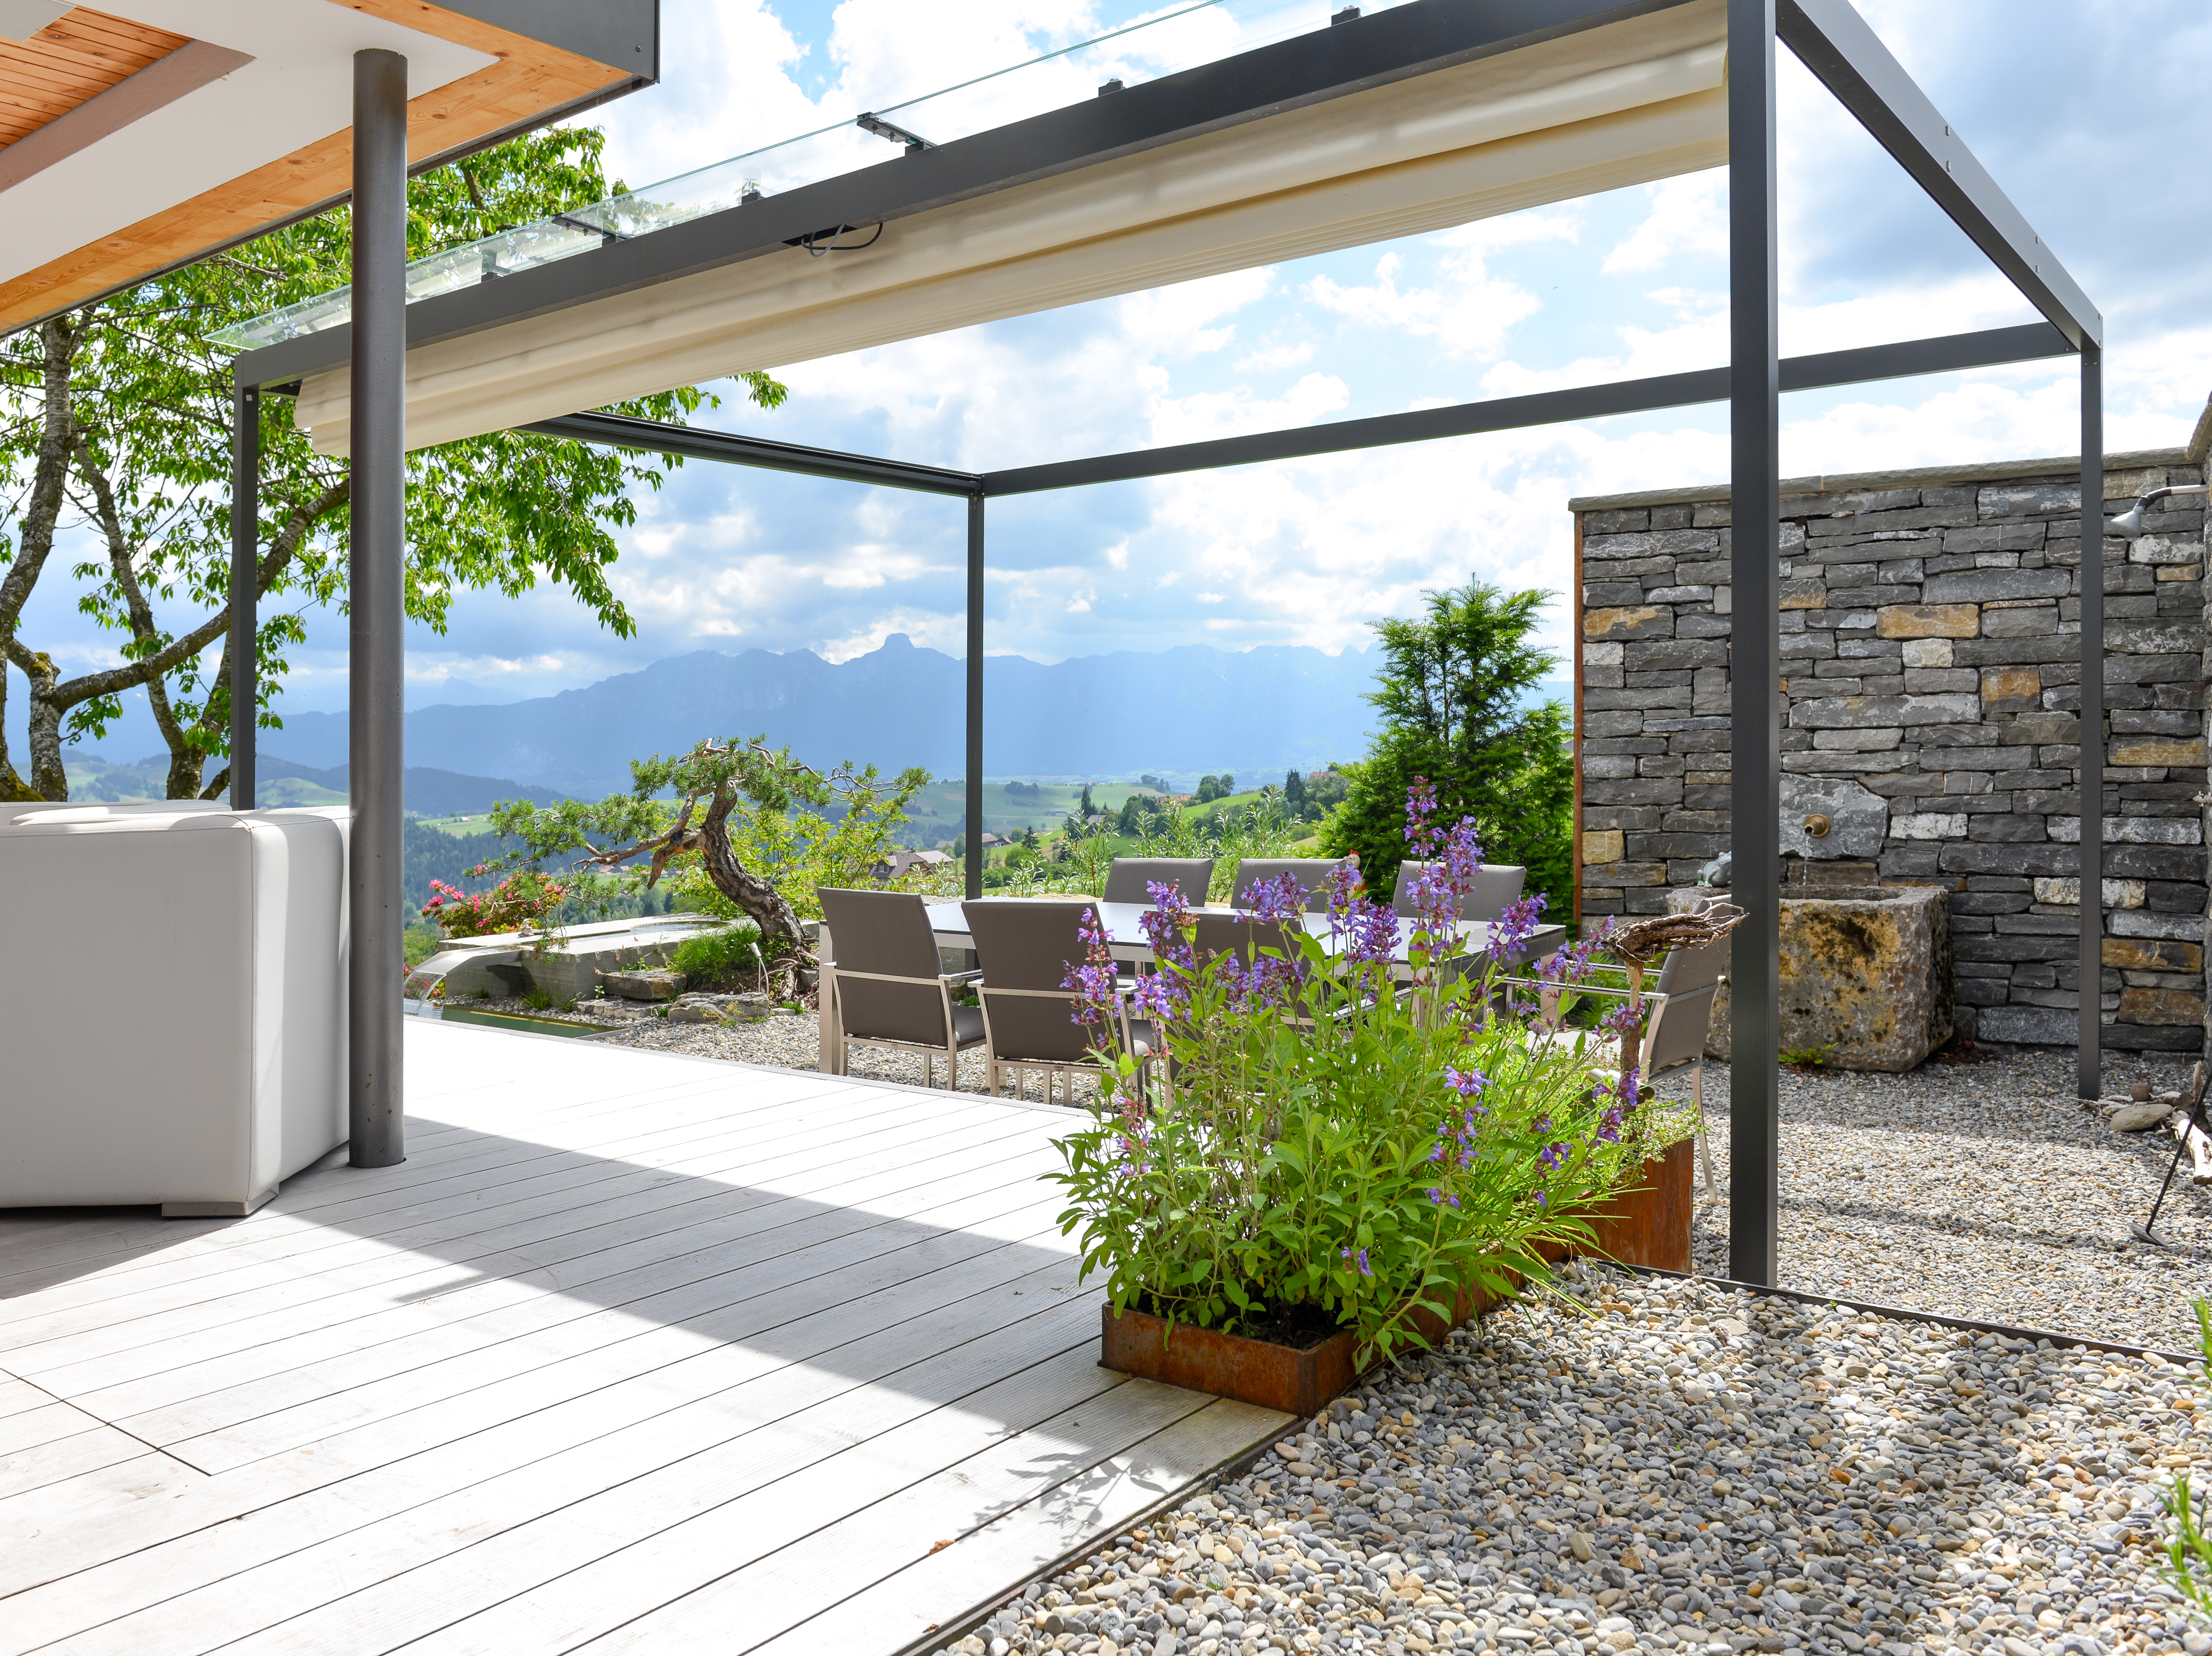 Terrassengestaltung mit Holzdeck, Badebrunnen und Naturstein